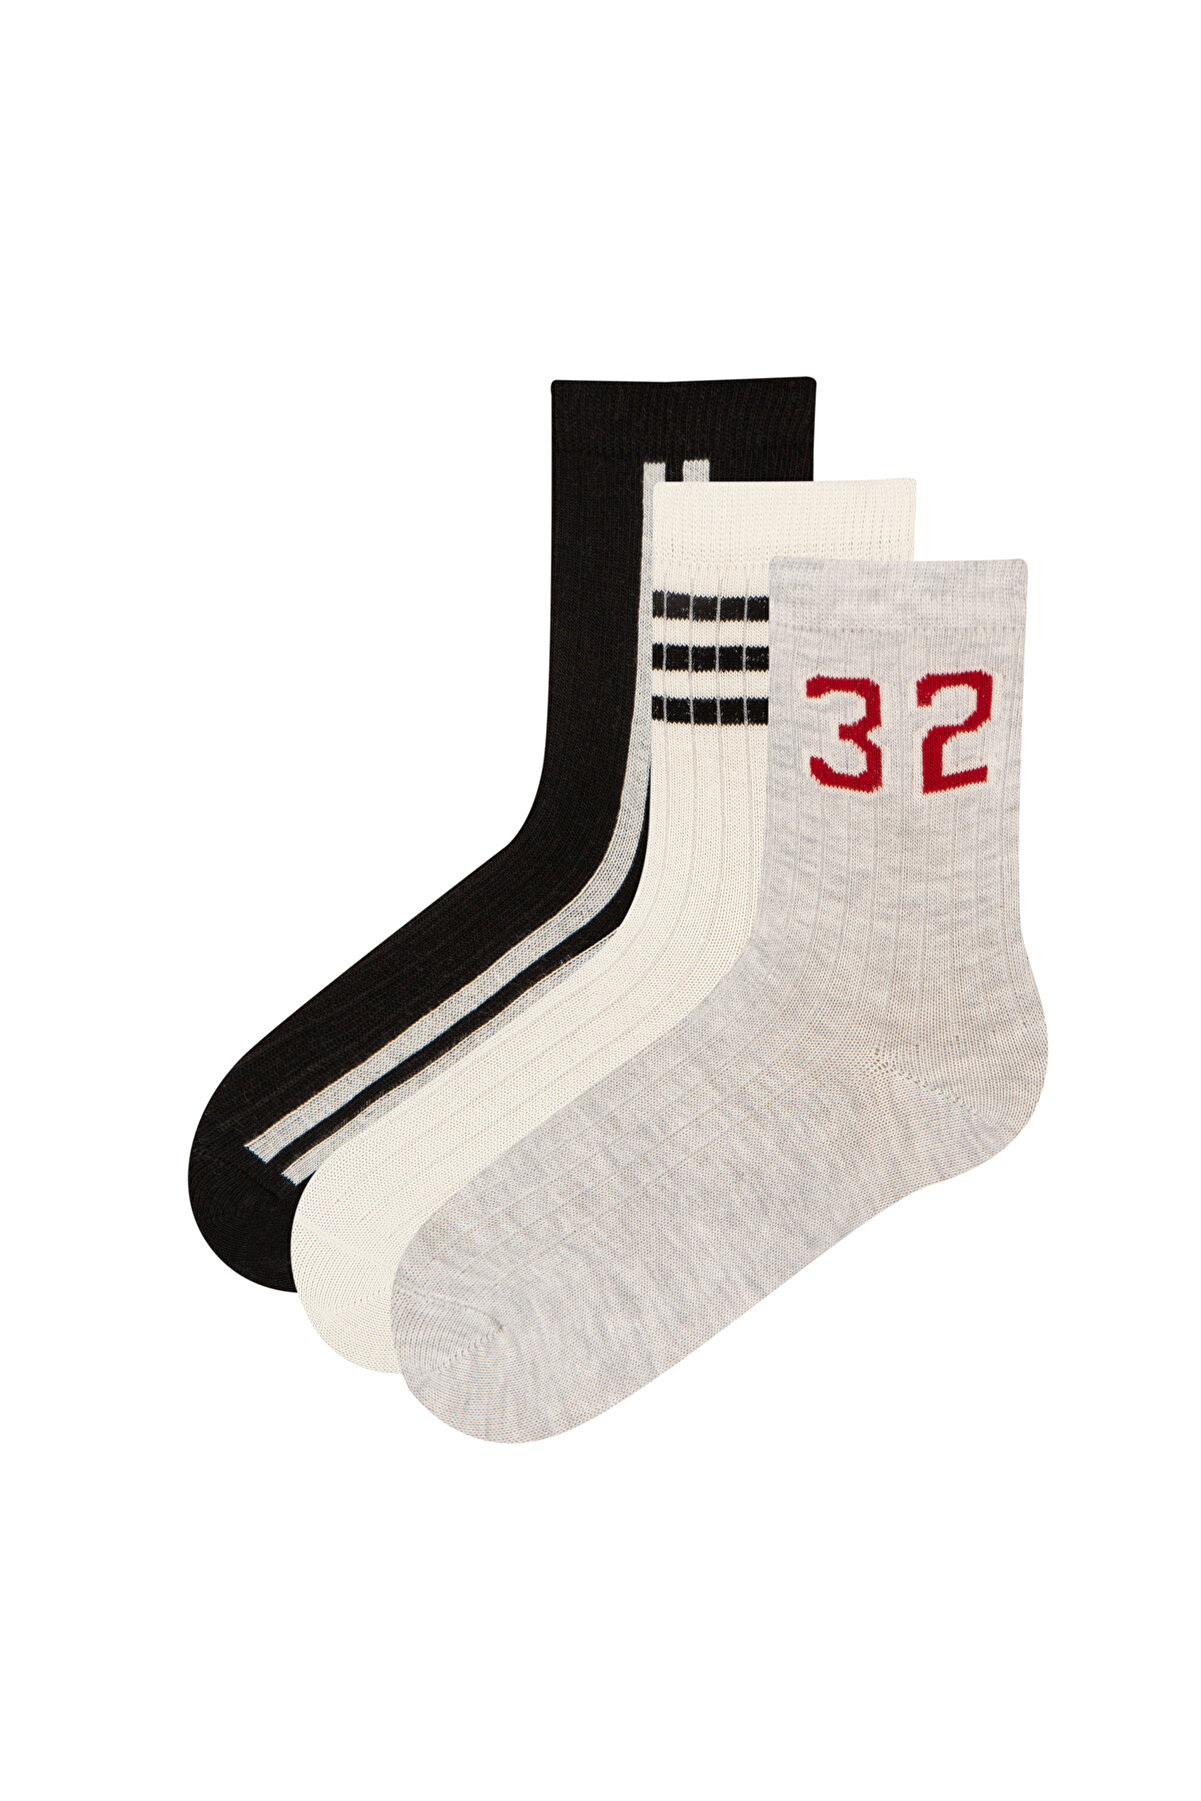 Penti Best Basic 3lü Soket Çorap